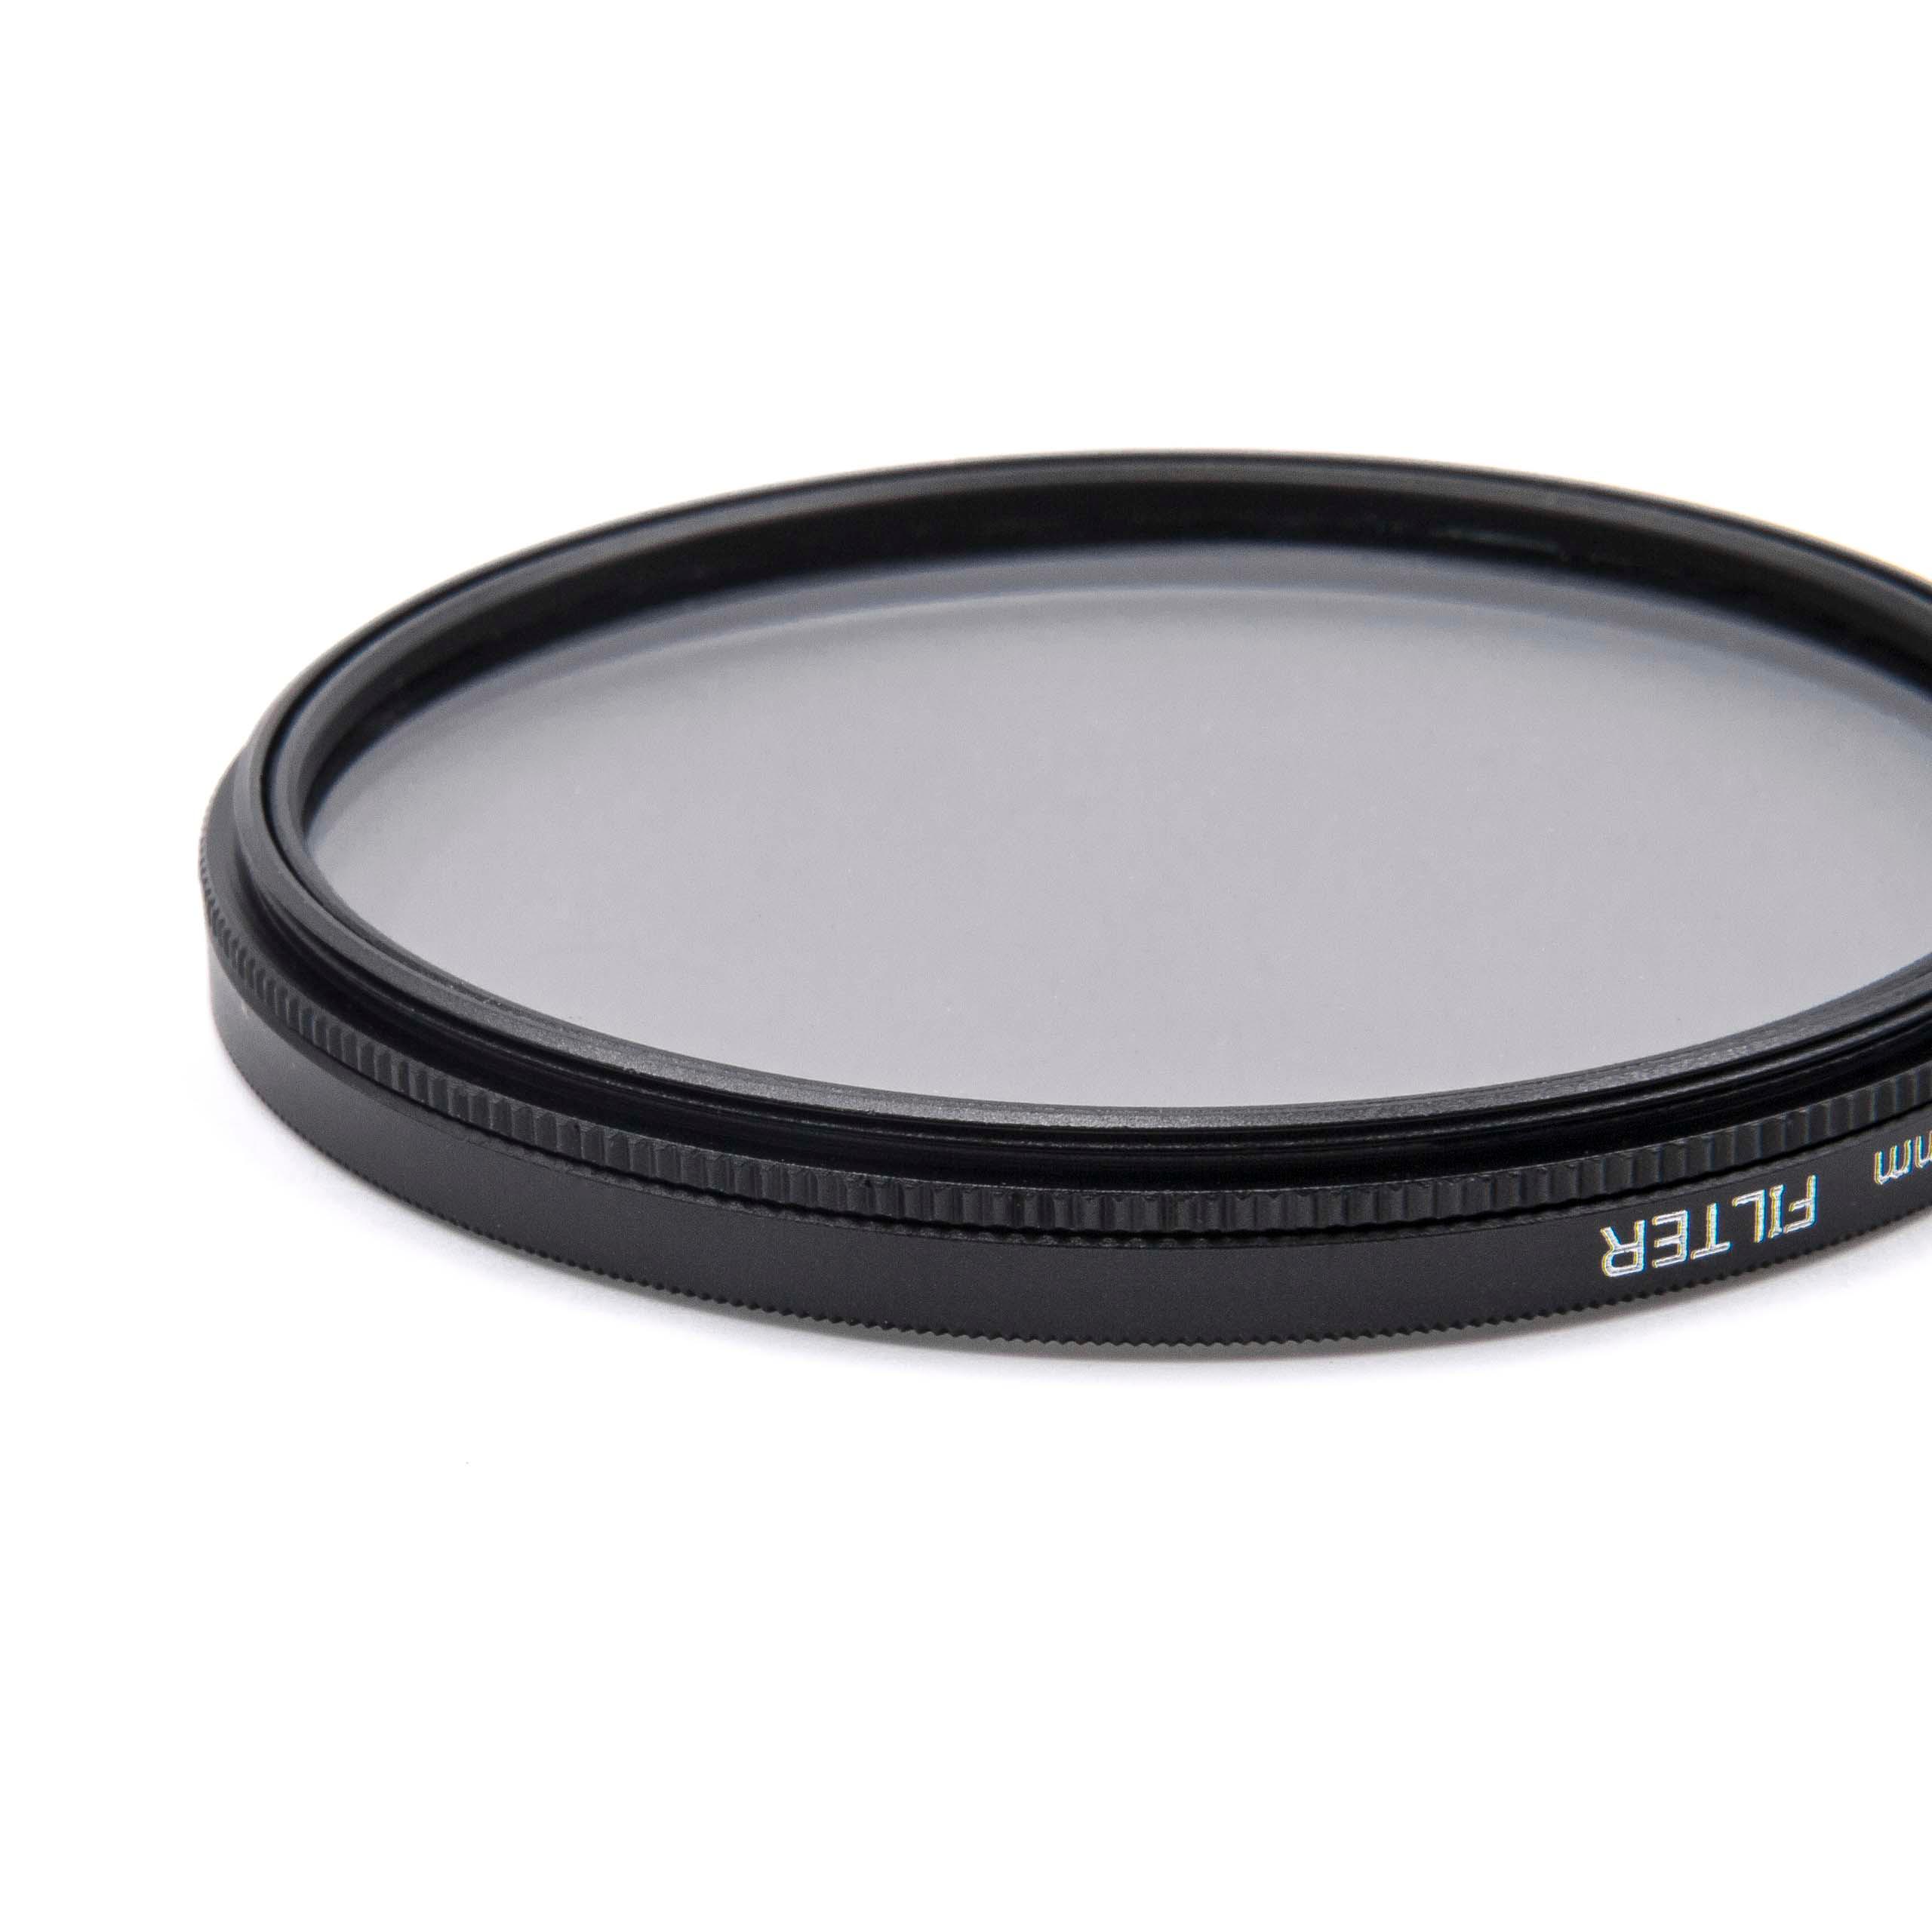 Filtr polaryzacyjny 67mm do różnych obiektywów aparatów - filtr CPL 